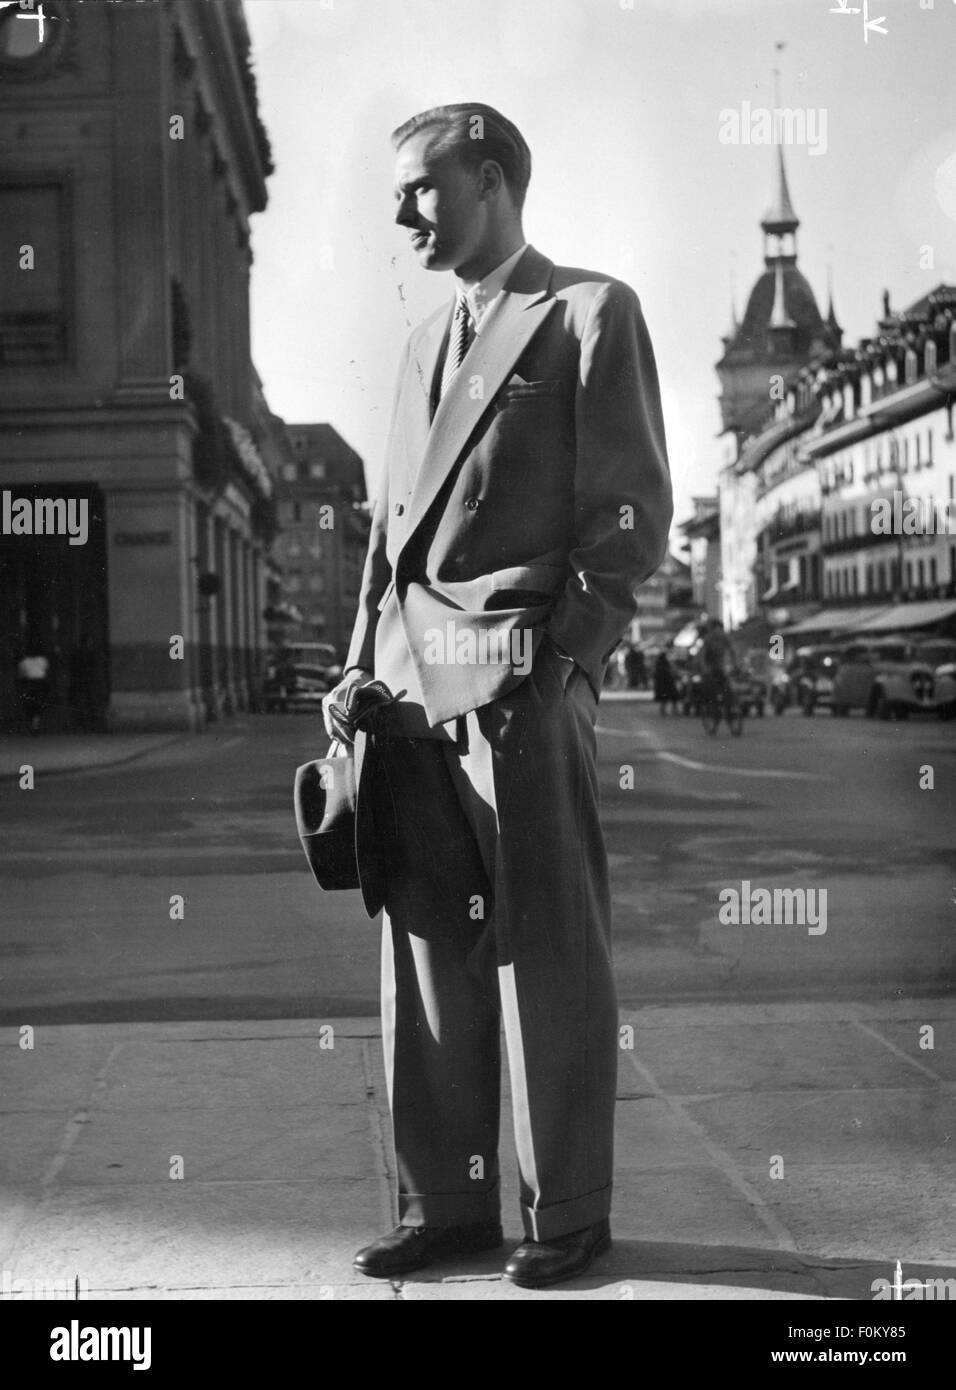 1950s fashion man -Fotos und -Bildmaterial in hoher Auflösung – Alamy